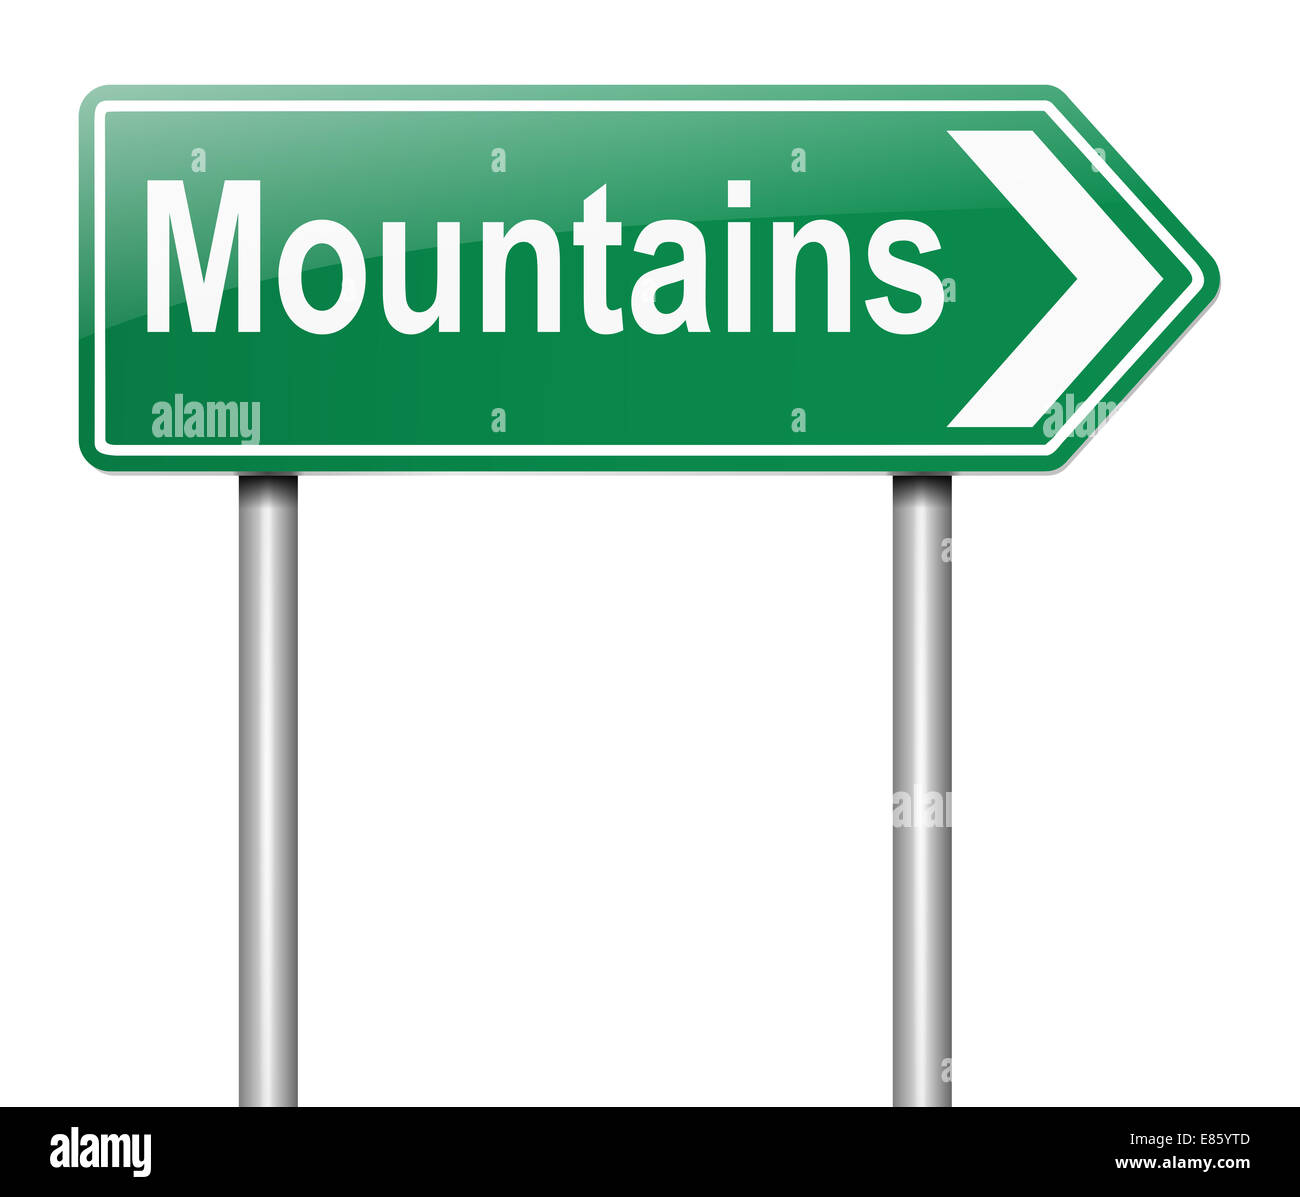 Mountains concept. Stock Photo